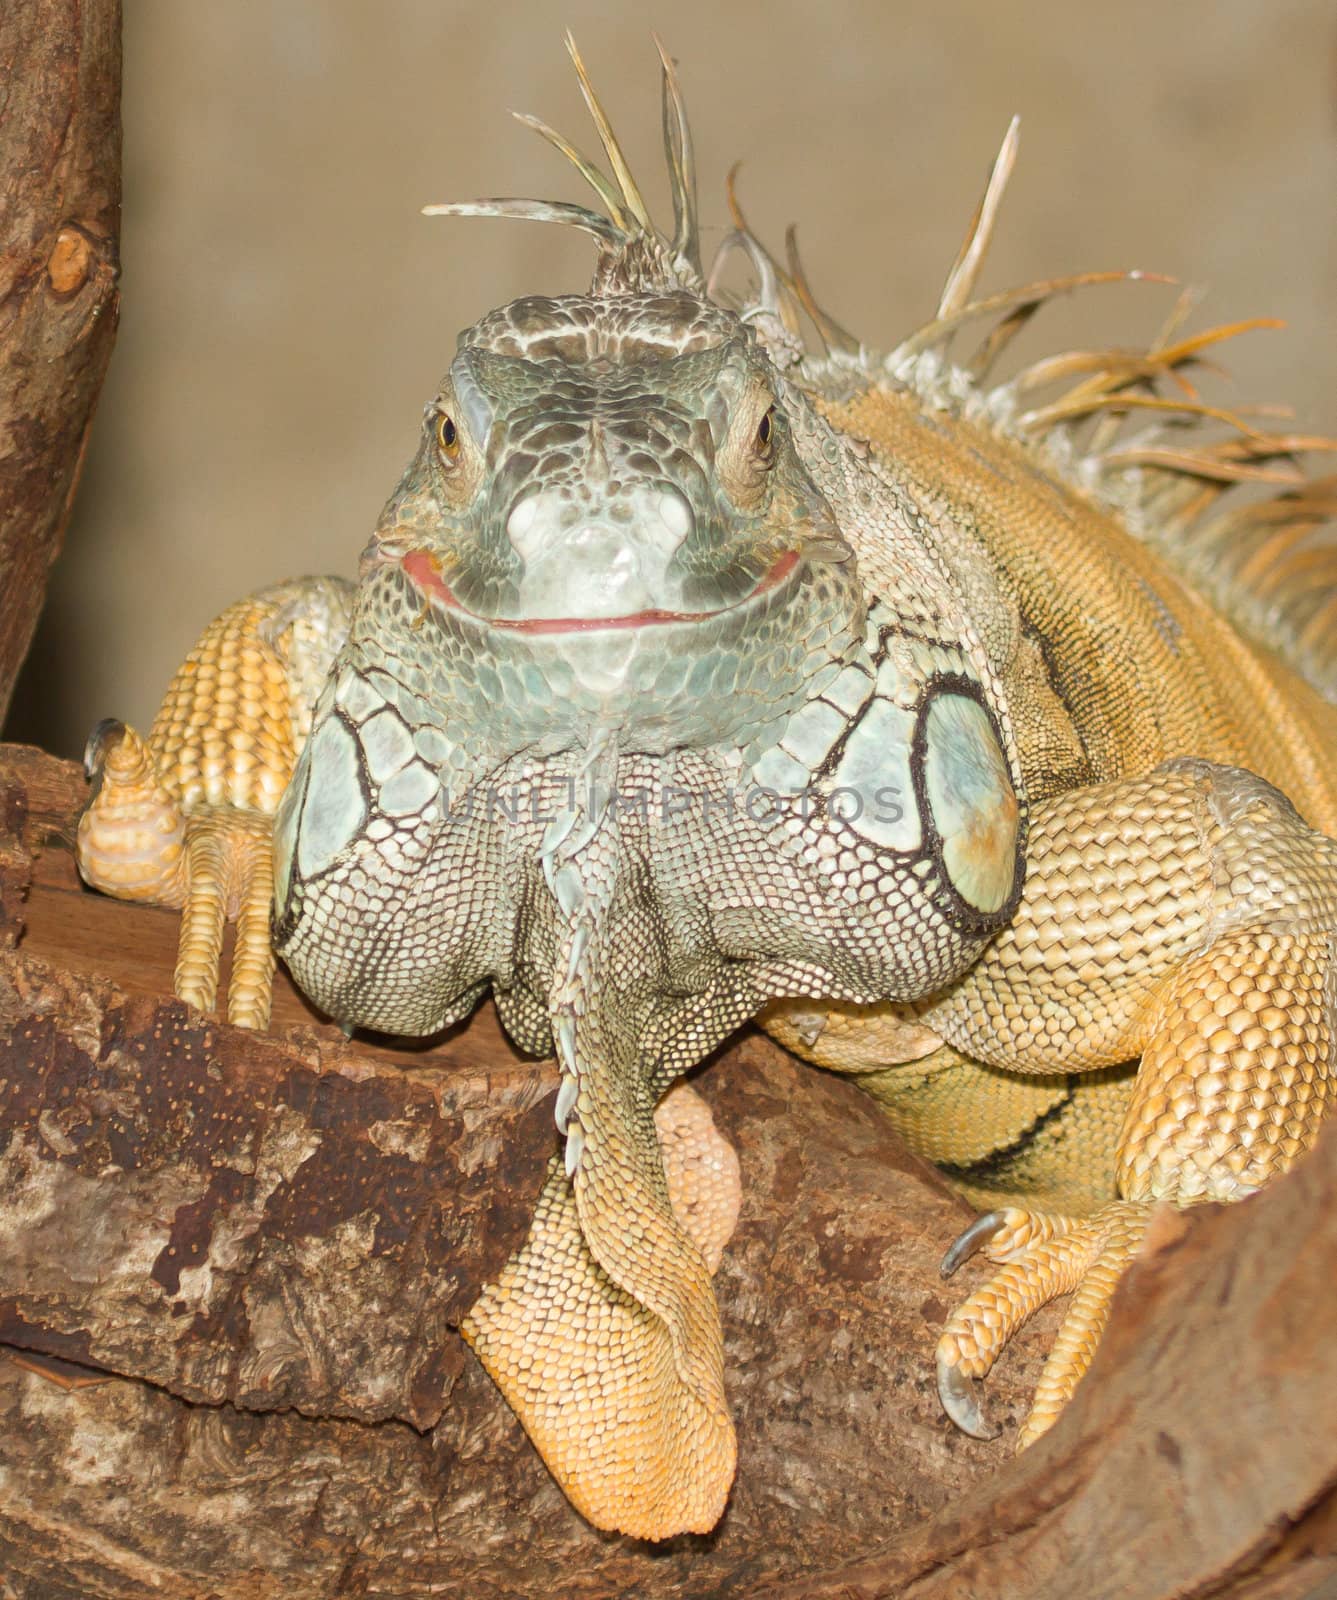 A green iguana in a dutch zoo